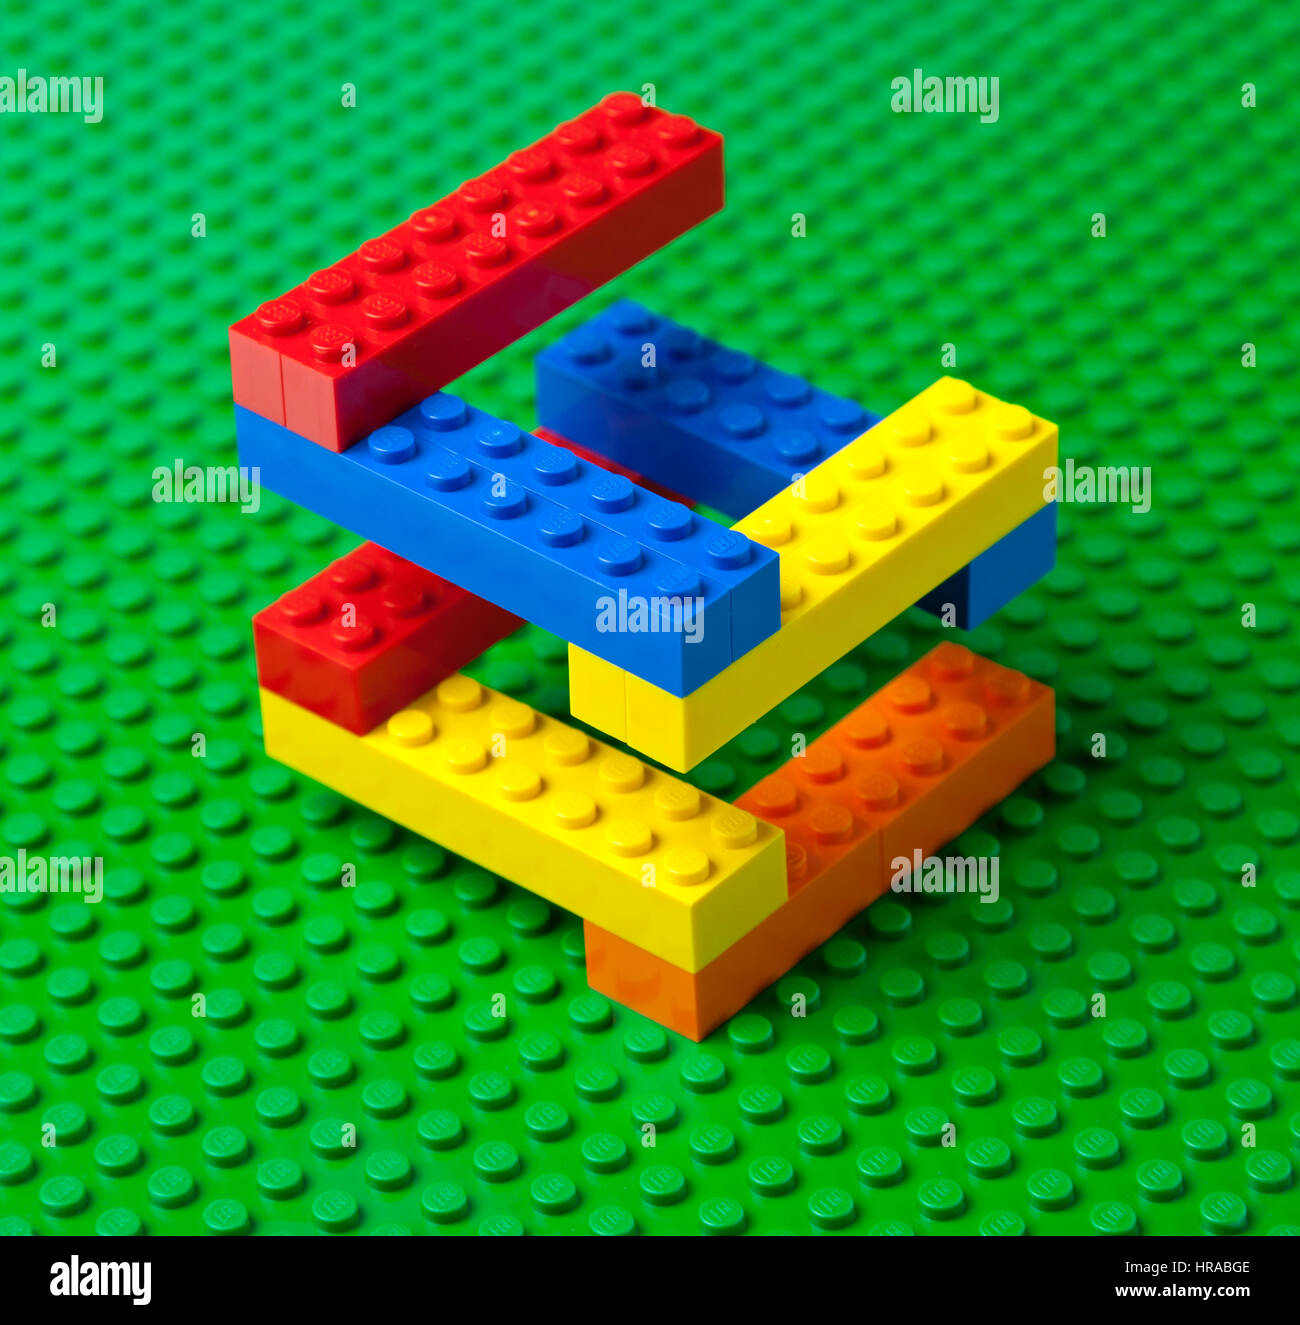 Bunte Lego Ziegelbau oder Treppe auf einer grünen Lego-Grundplatte. Stockfoto